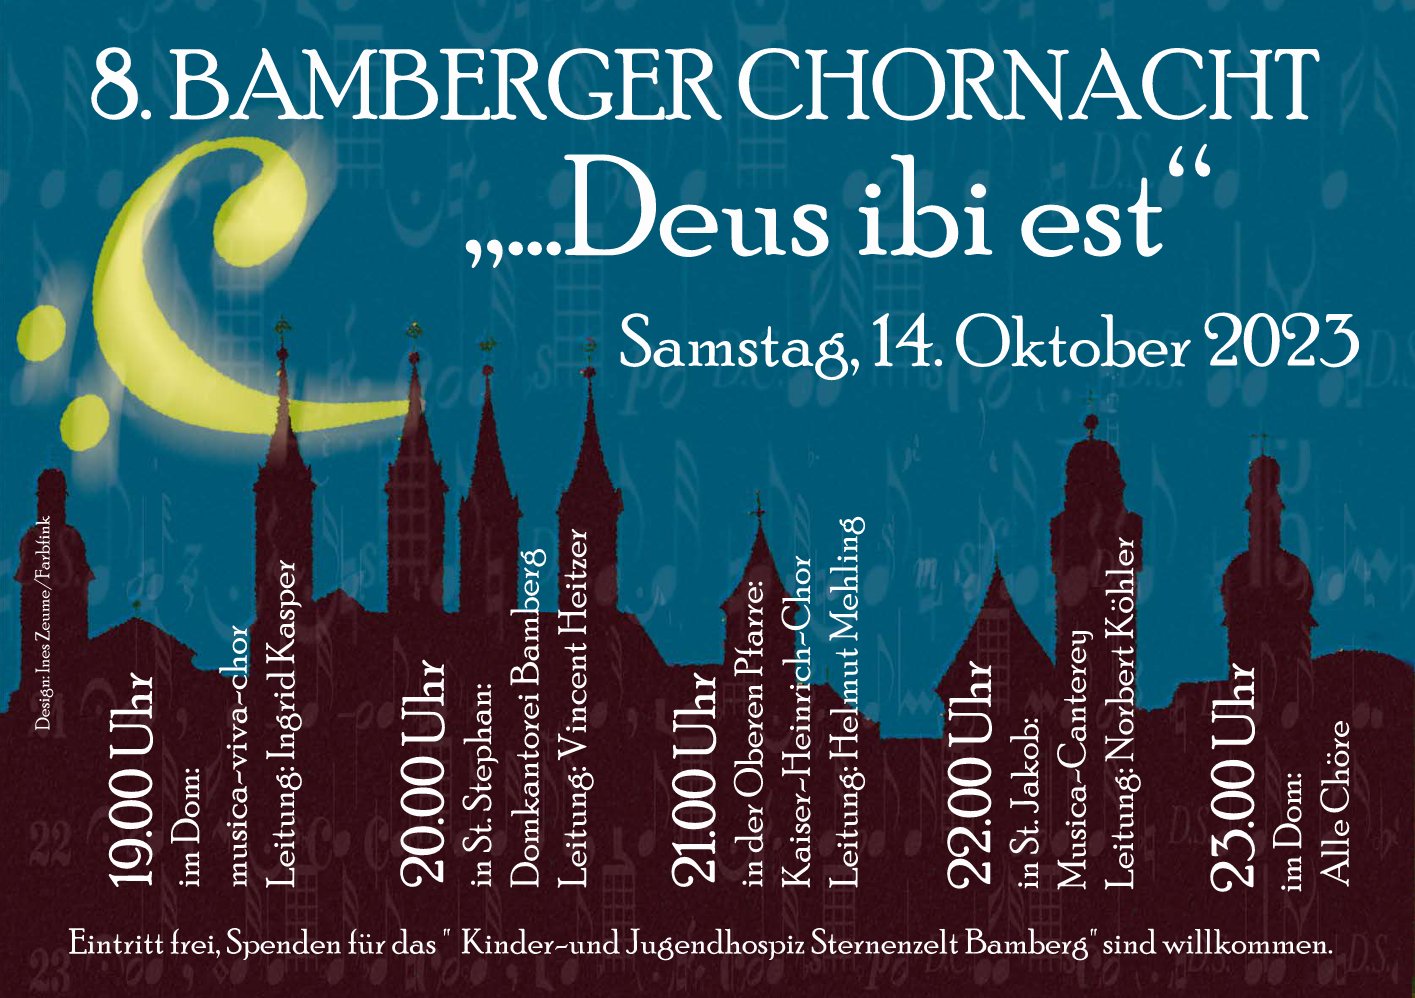 8. Bamberger Chornacht